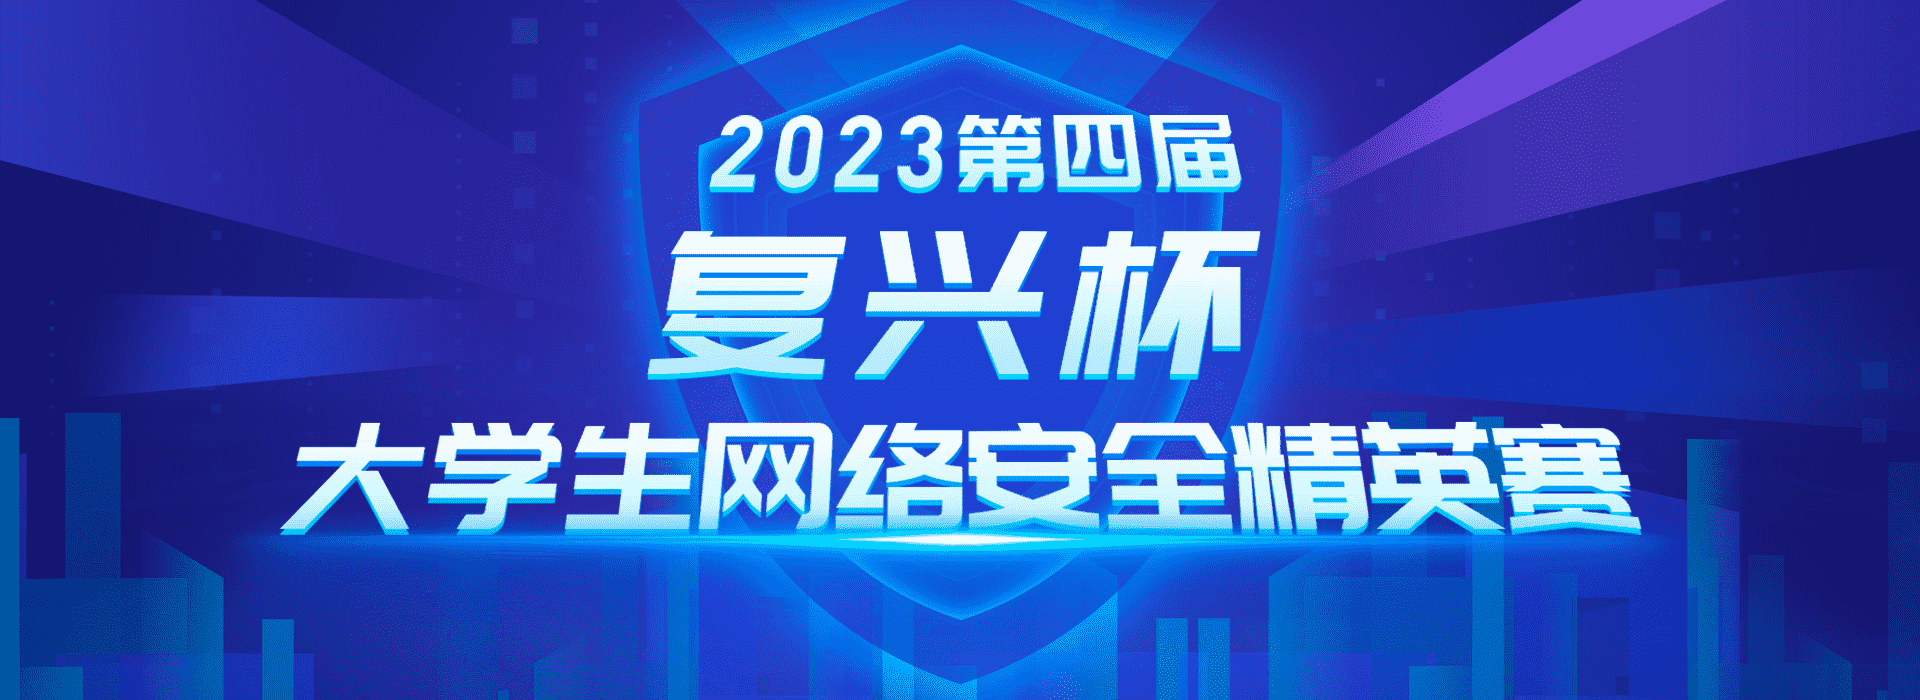 2023年第四届大学生网络安全精英赛